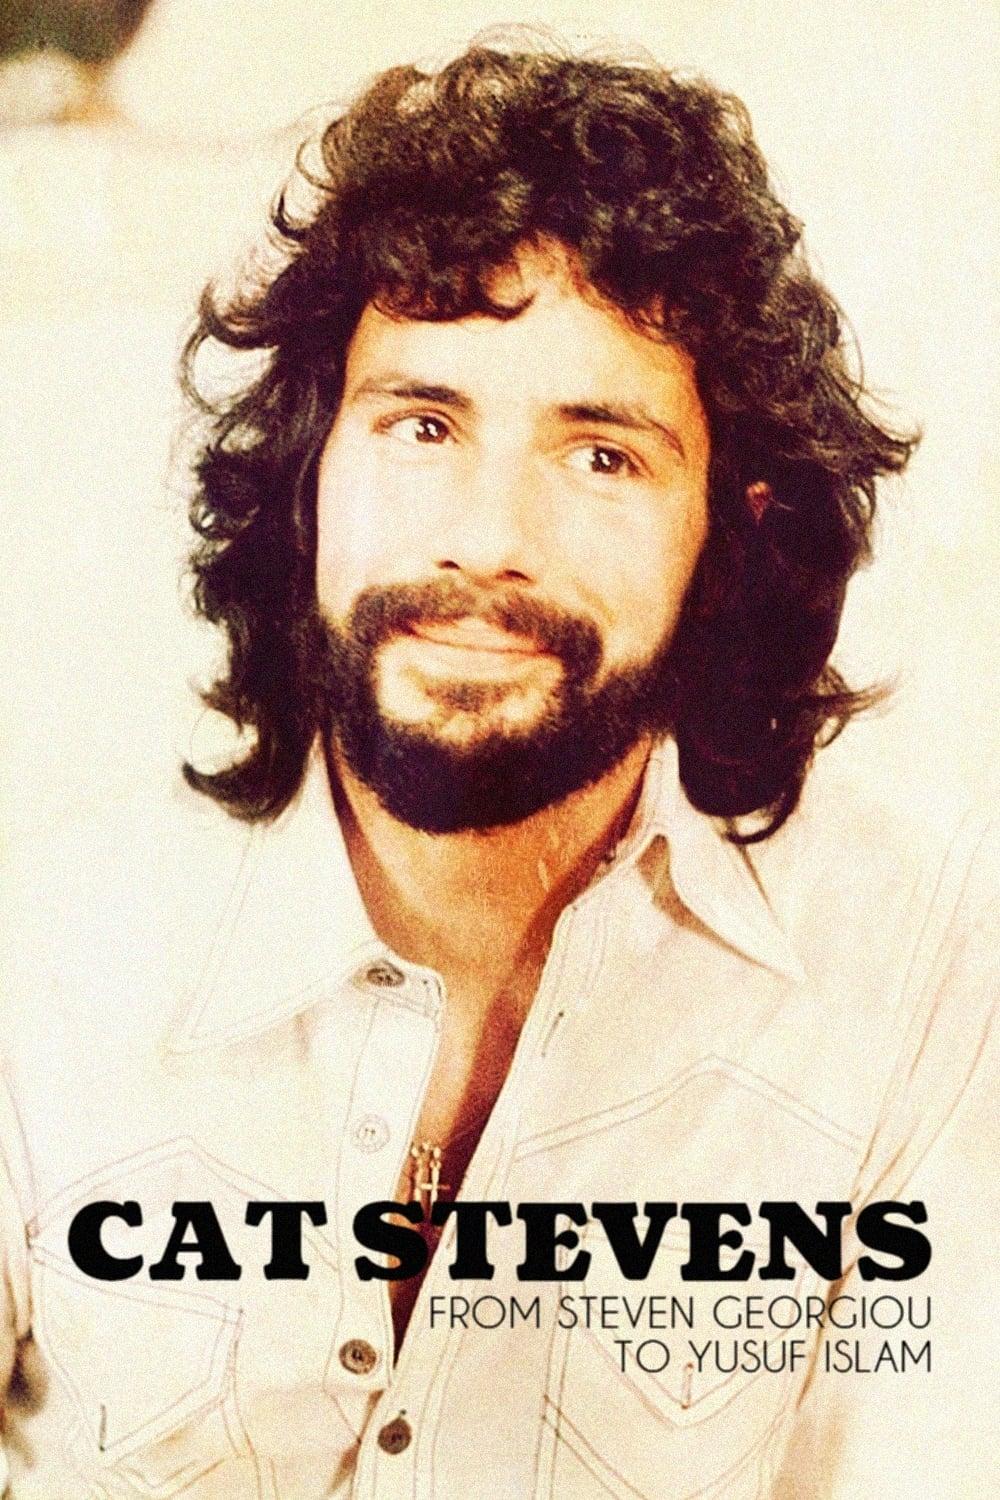 Cat Stevens: From Steven Georgiou to Yusuf Islam poster